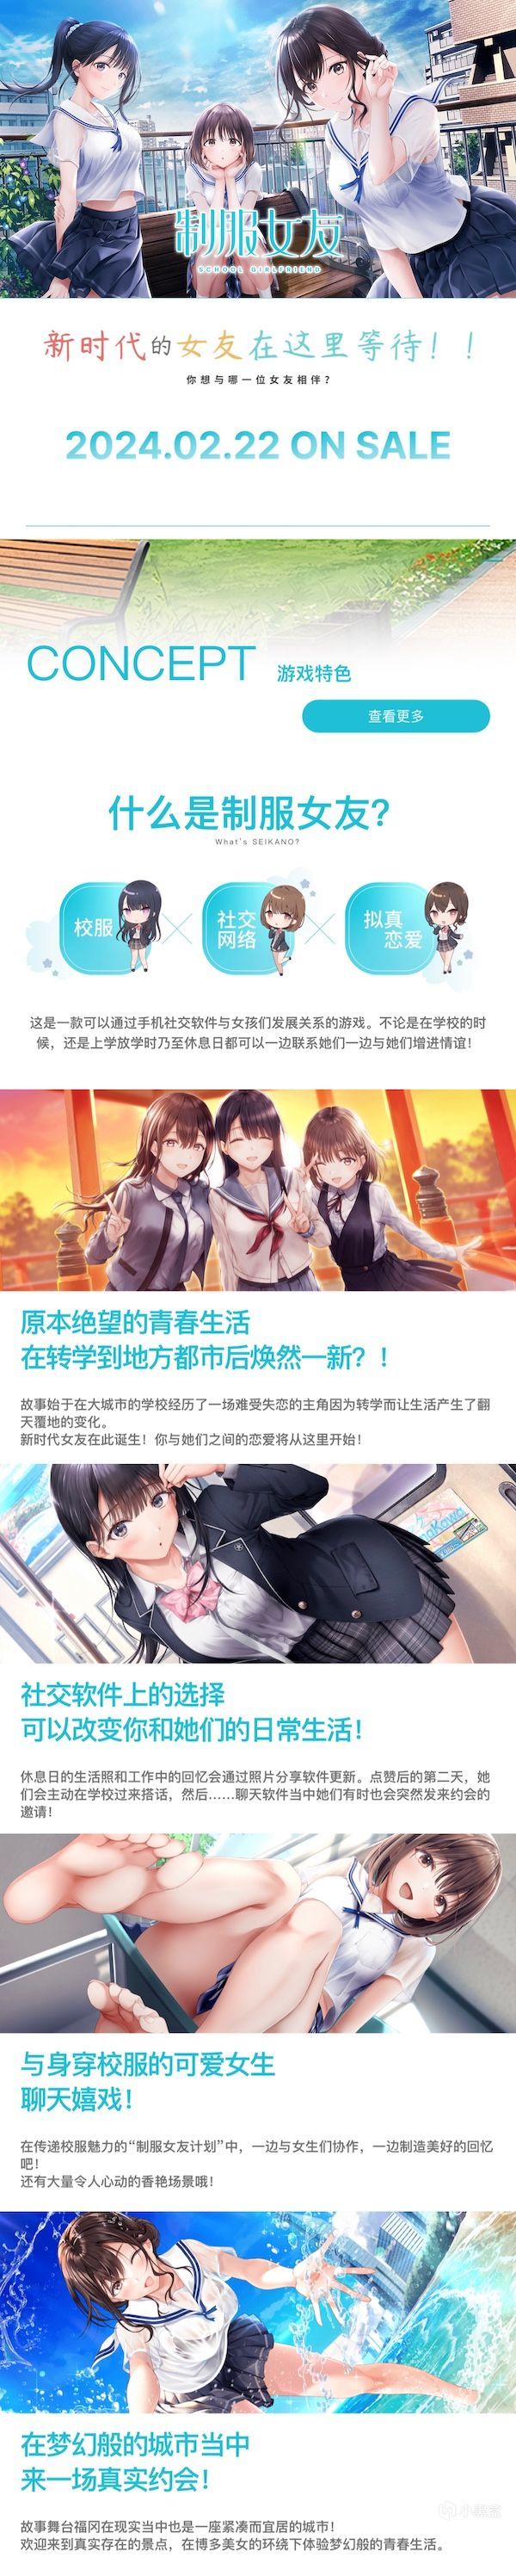 《制服女友》国际中文版将于2024年4月2日于STEAM平台发售-第2张